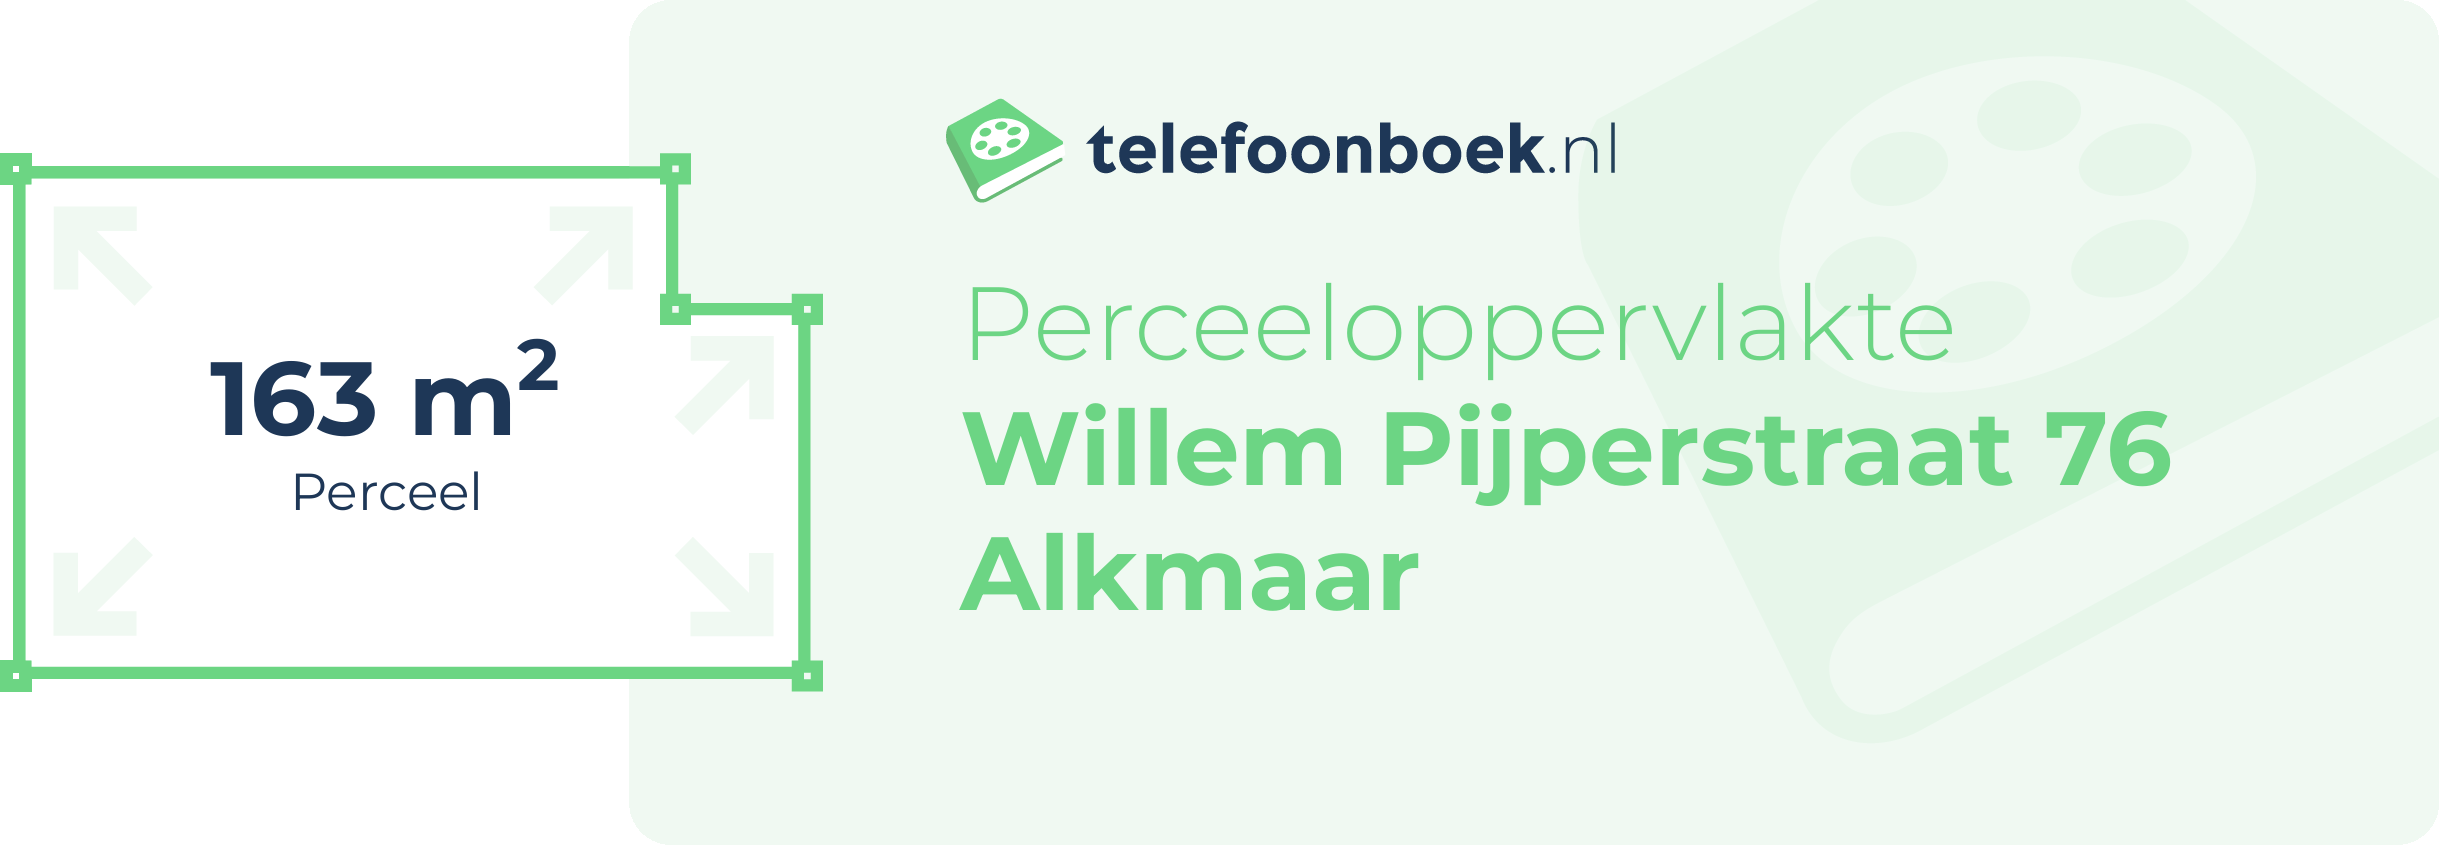 Perceeloppervlakte Willem Pijperstraat 76 Alkmaar